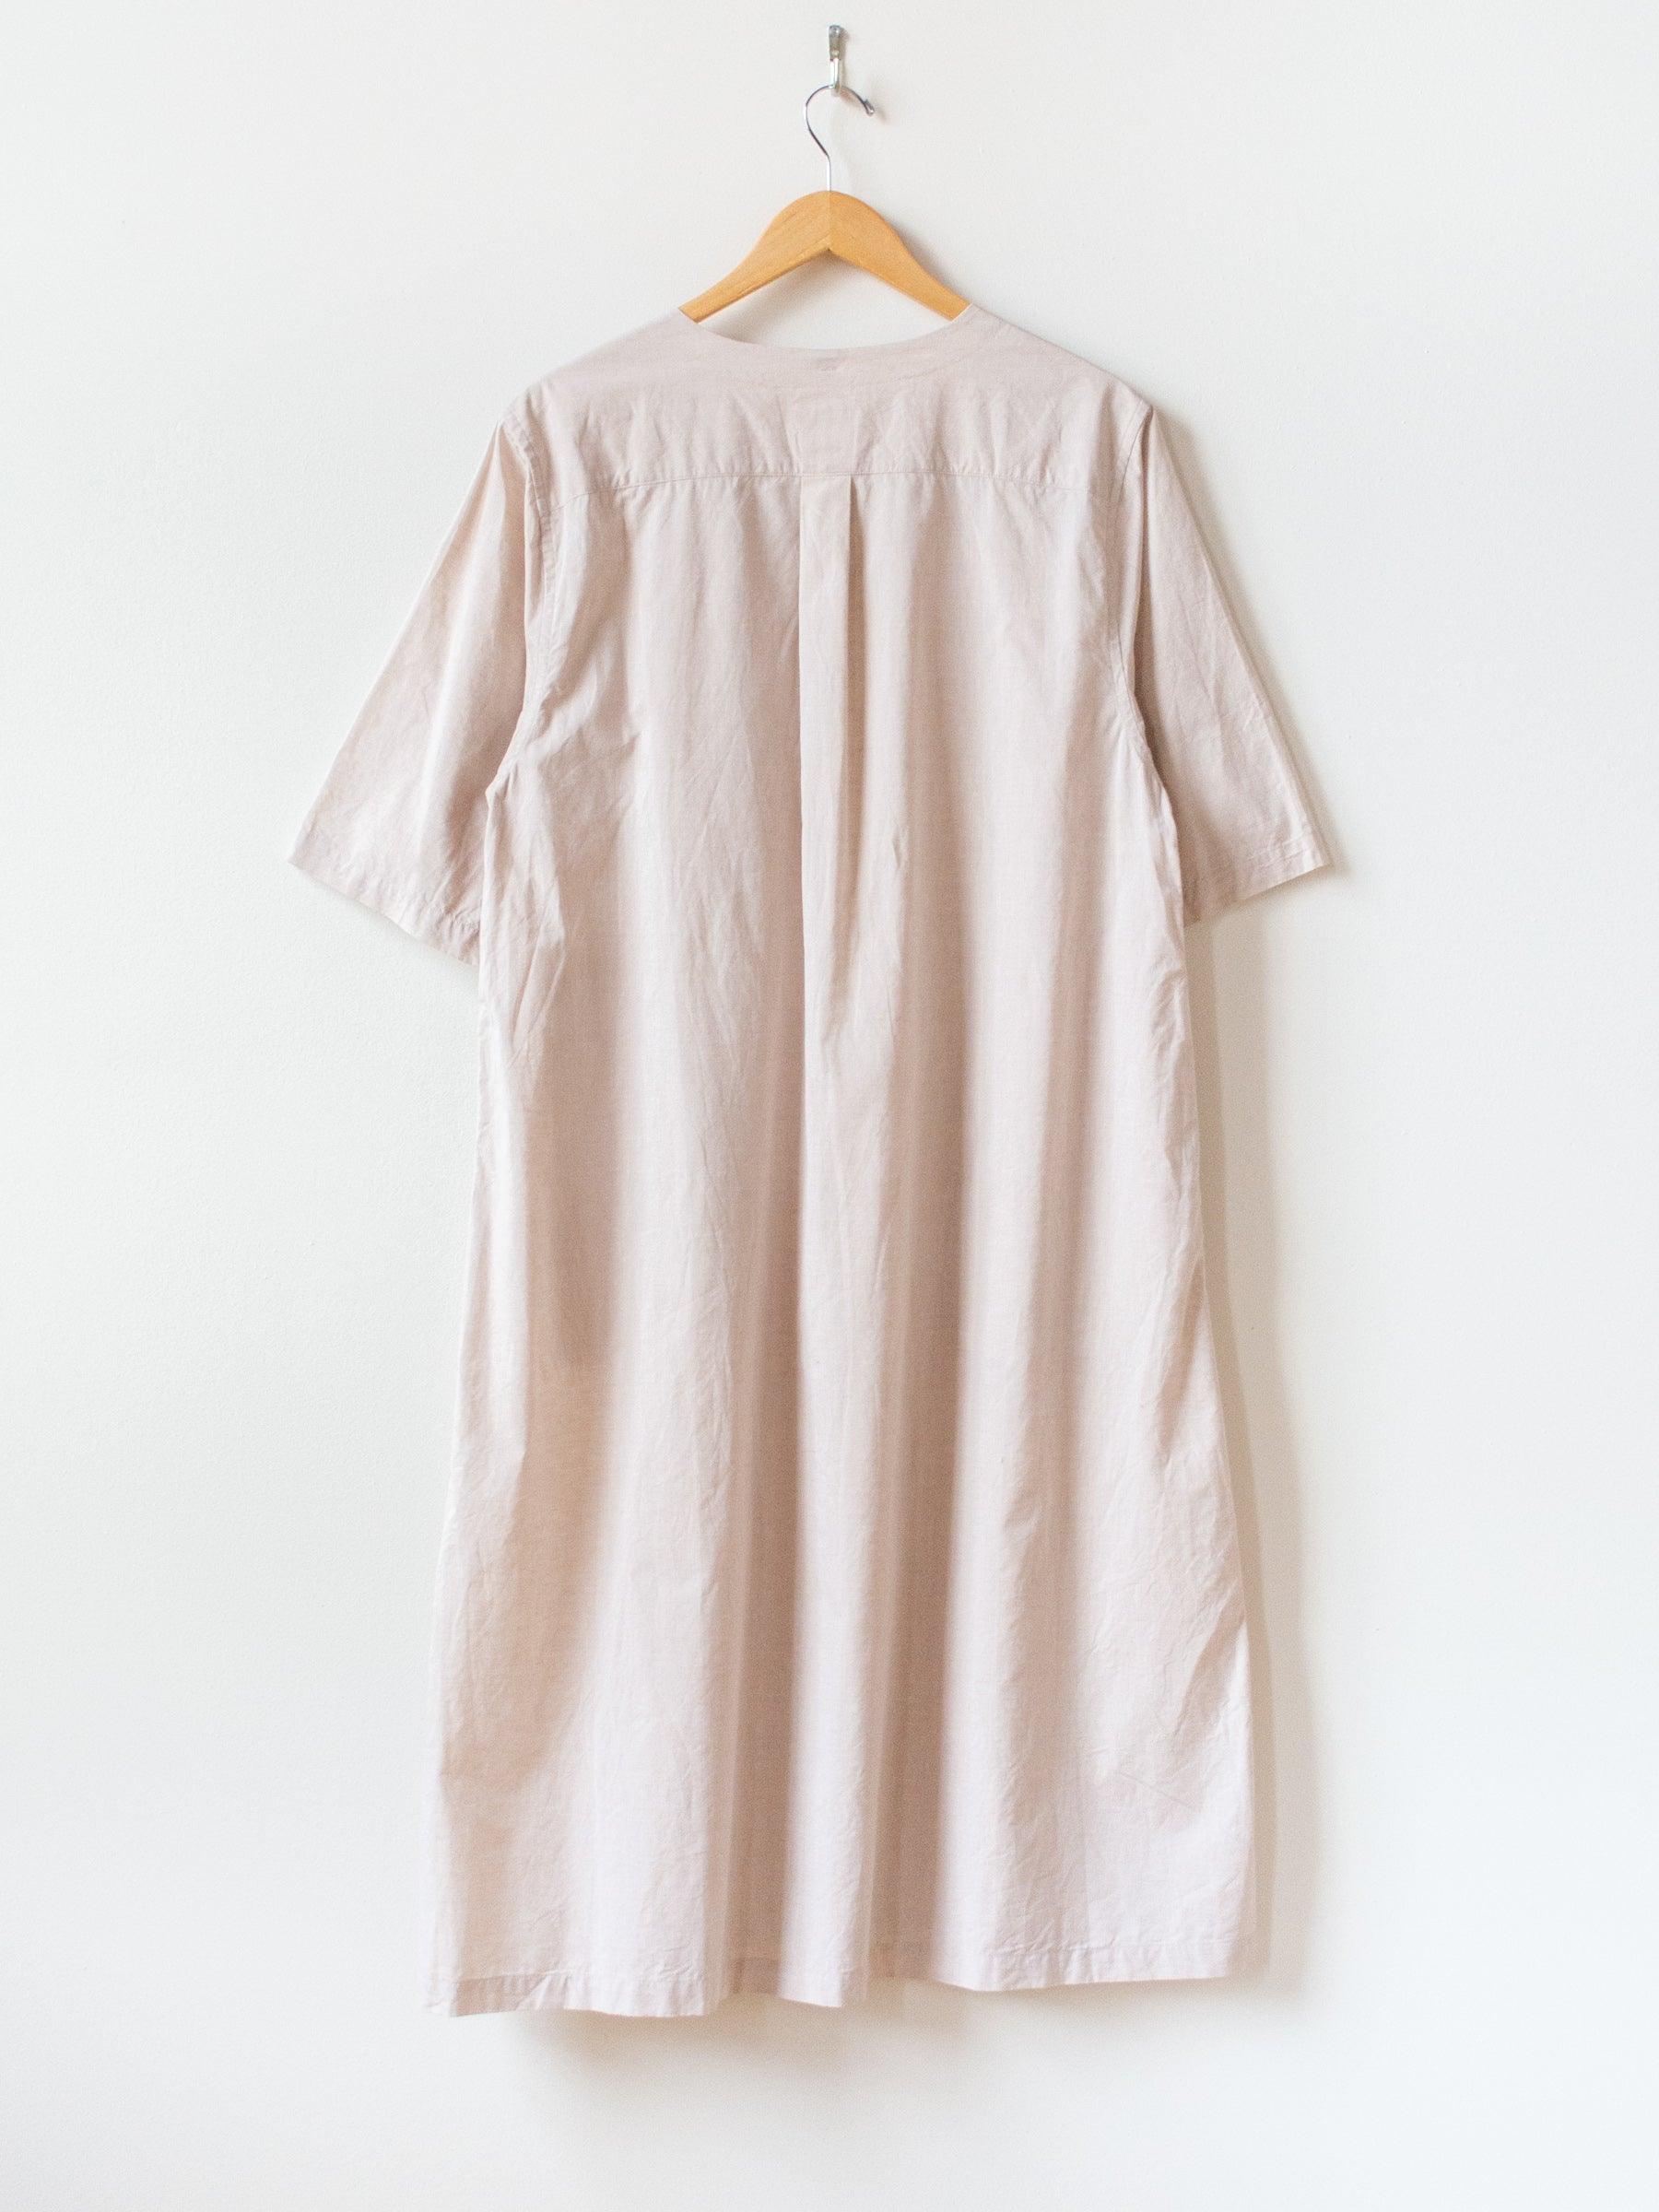 Namu Shop - ts(s) Lightweight Chambray Pullover Shirt Dress - Pink Beige